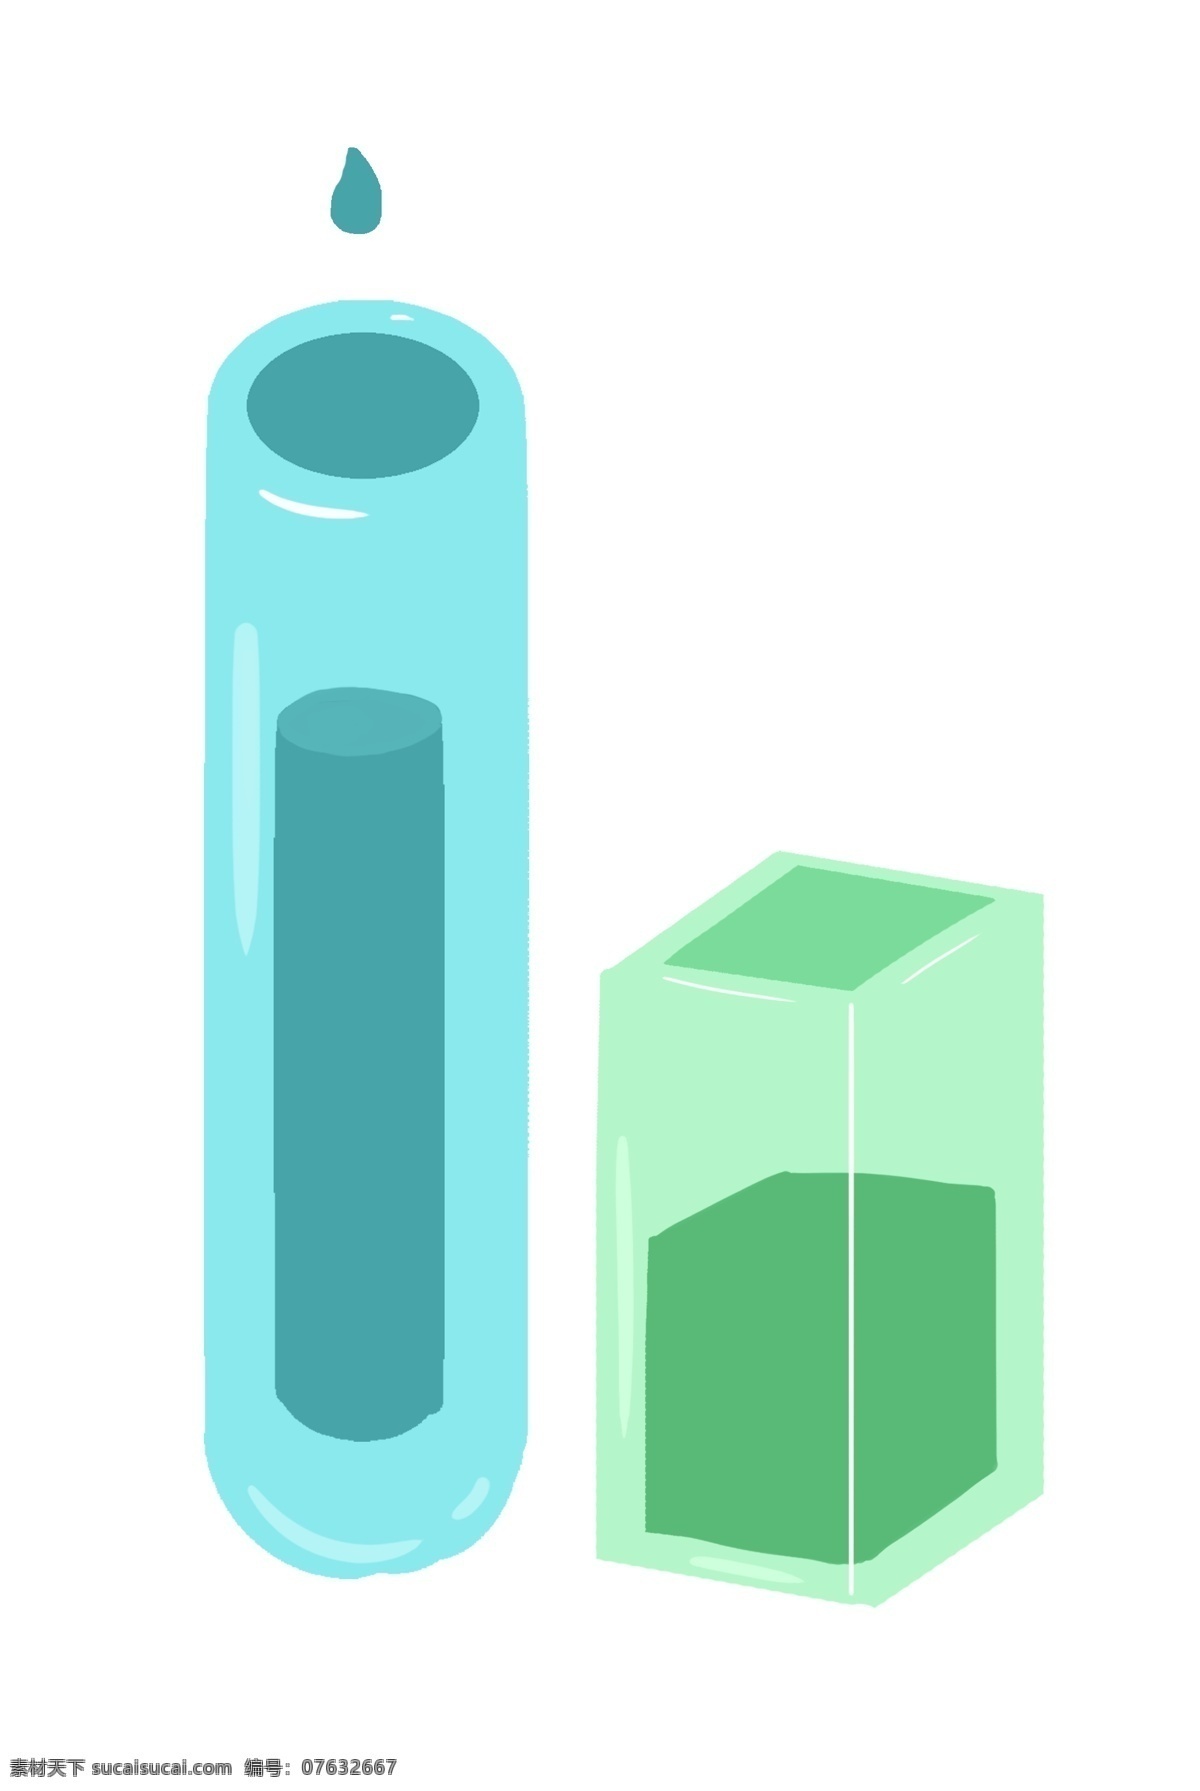 化学 容器 组合 插画 化学容器 蓝色瓶子 绿色瓶子 实验室 试验 化验 检验 科学 容器组合 卡通插画